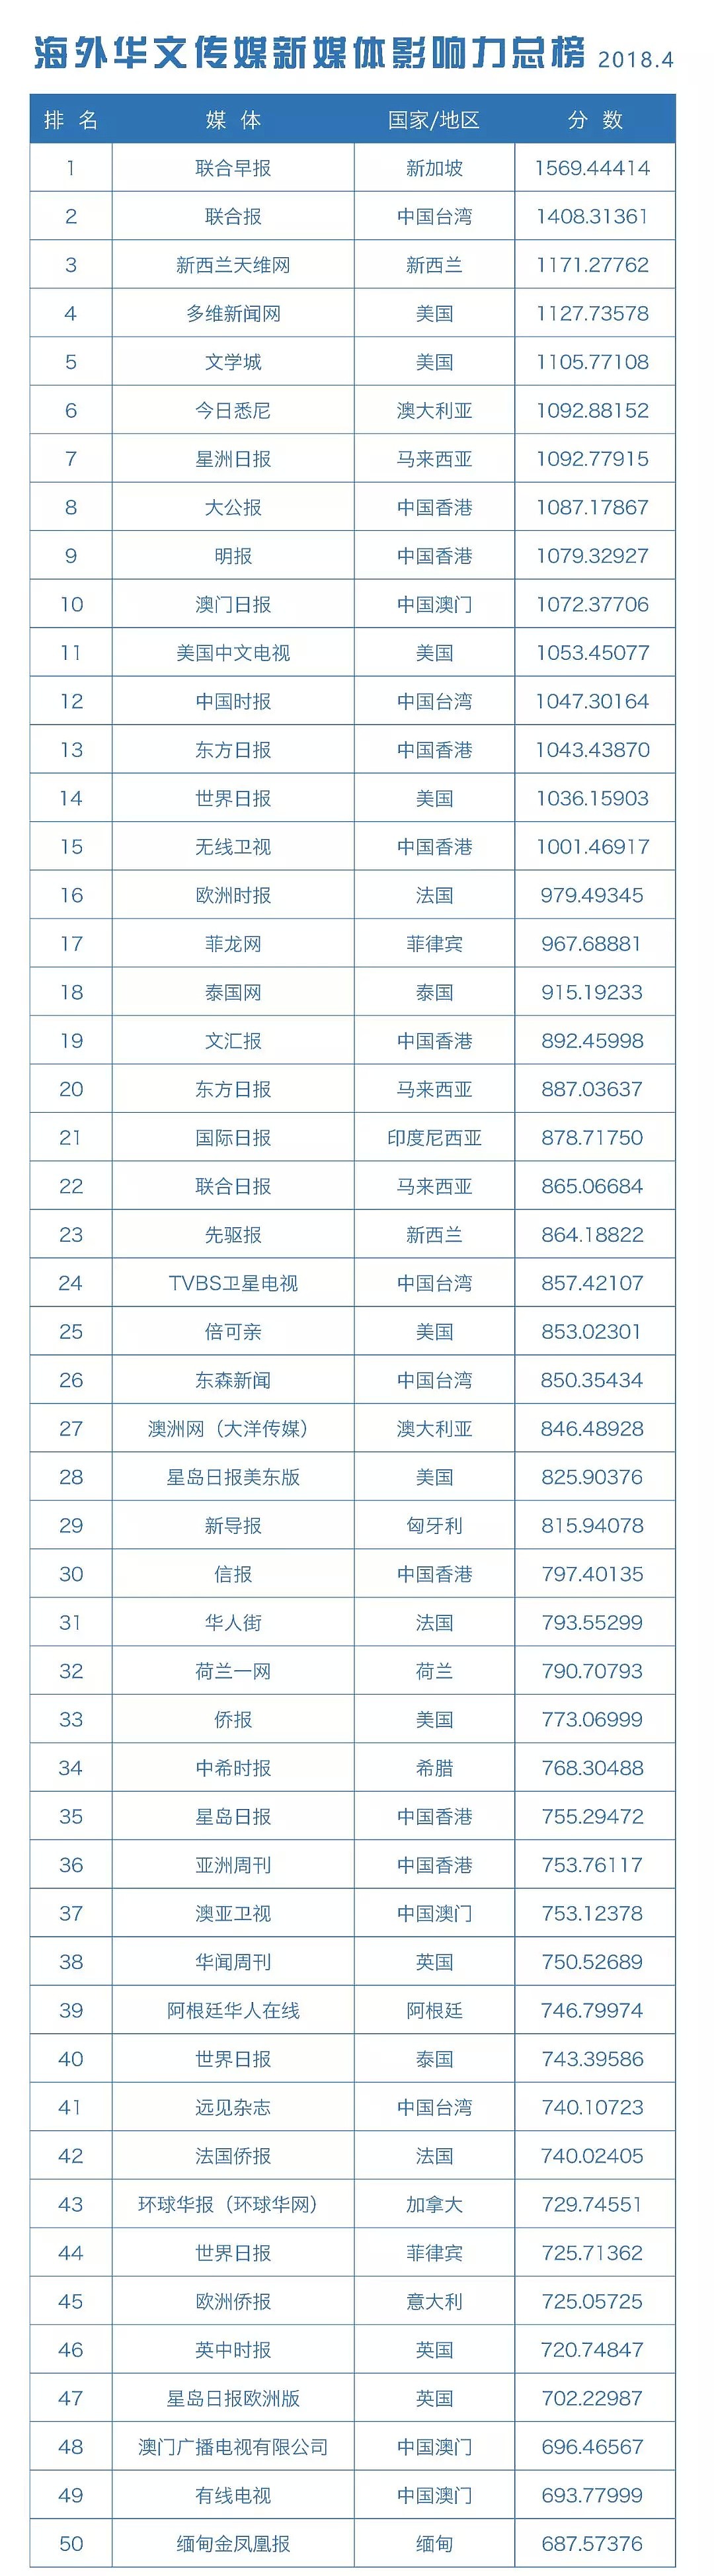 海外华文传媒新媒体影响力榜单发布 - 2